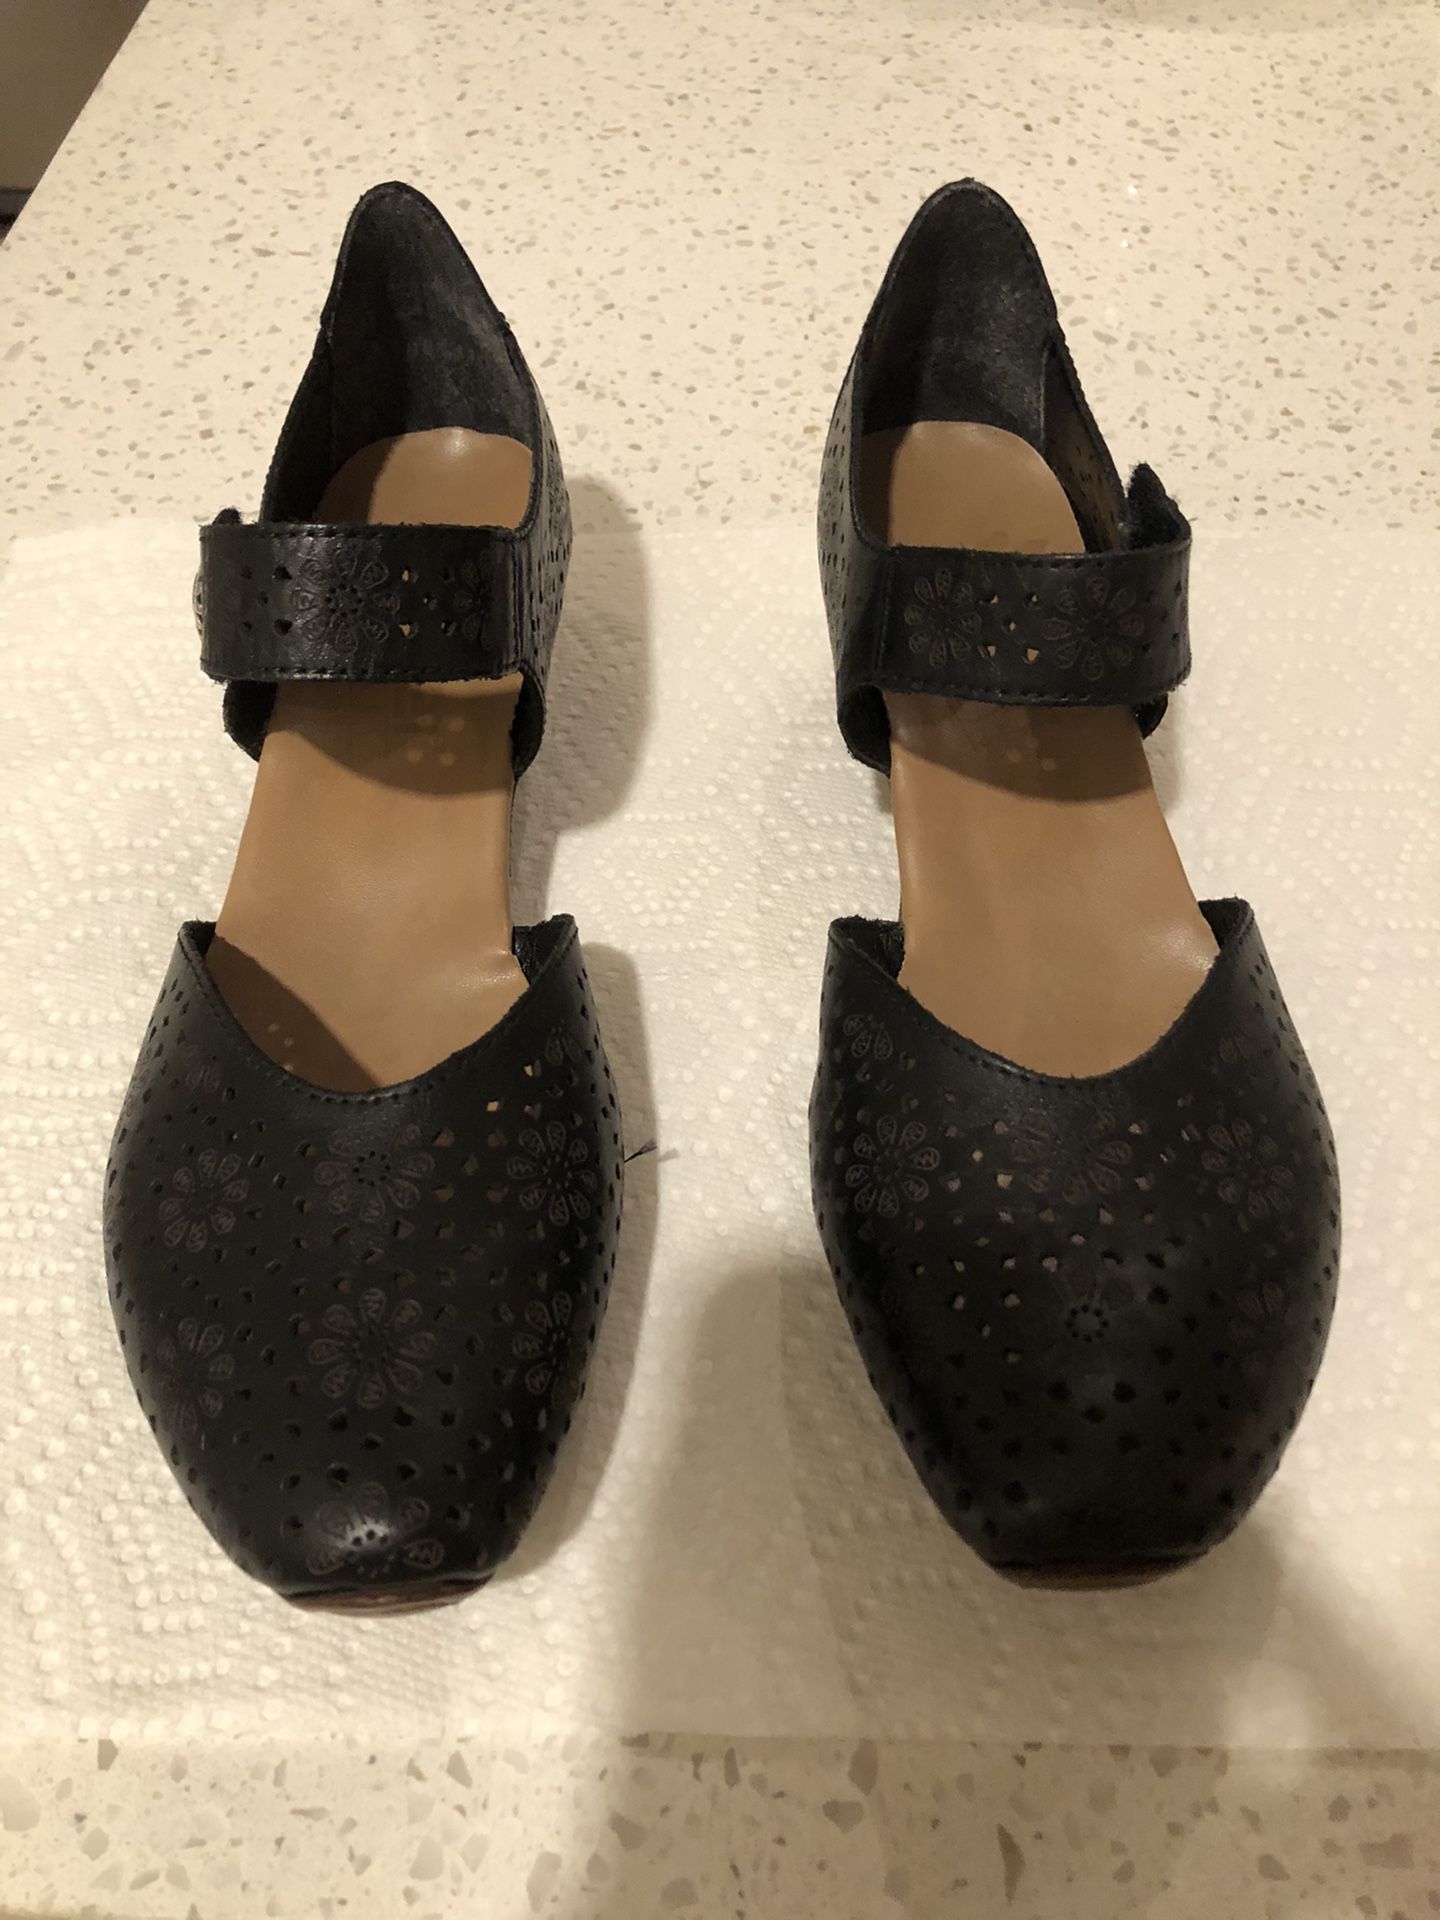 2 pairs Black Shoes/Pumps